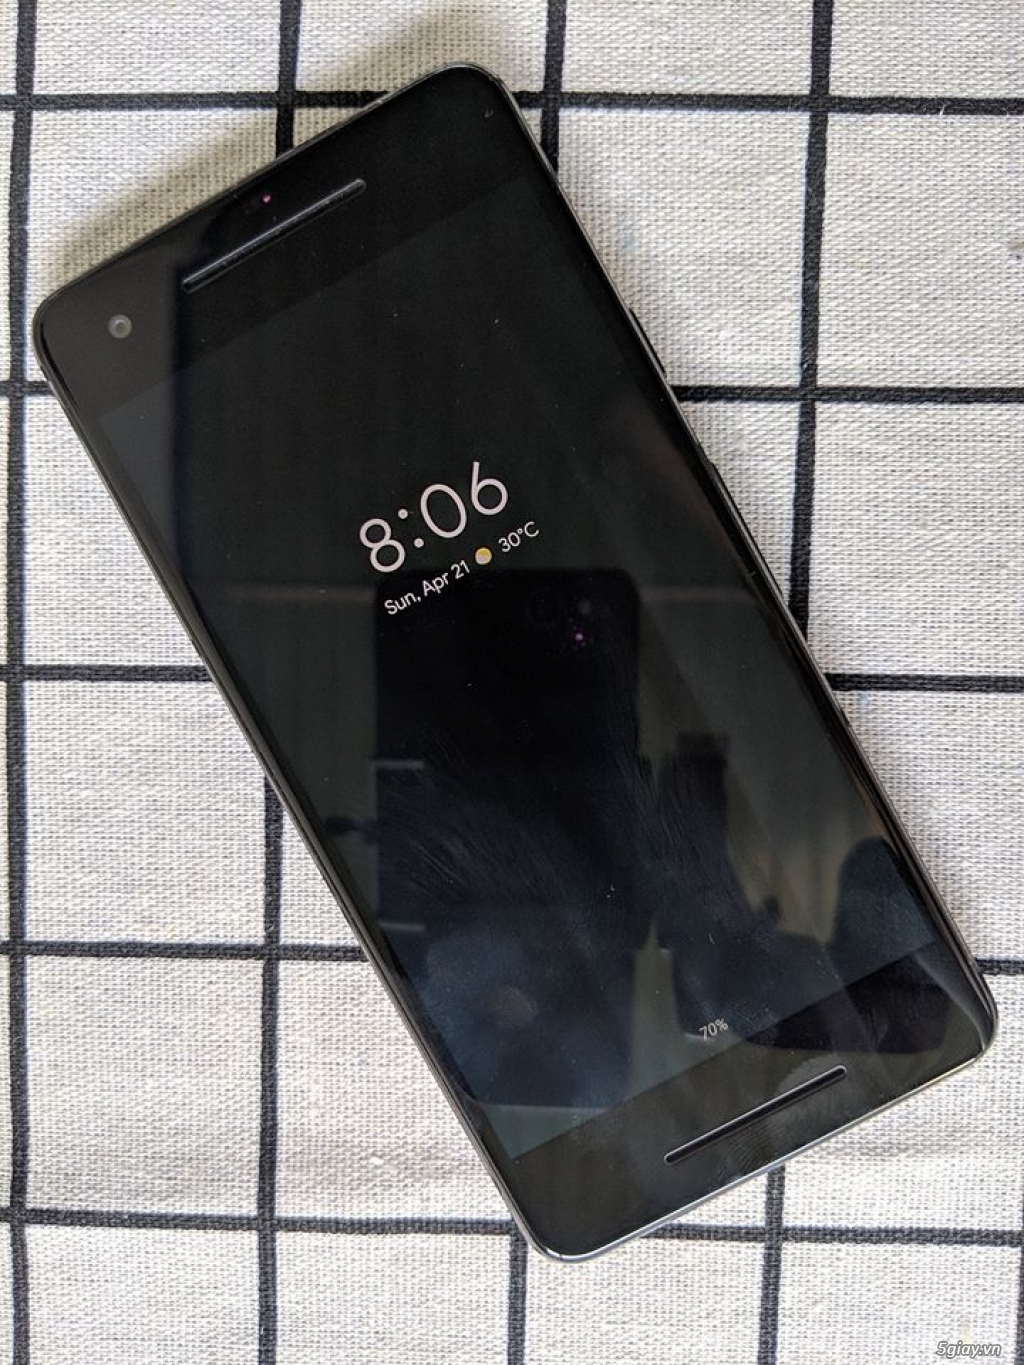 Google Pixel 2 Black 64Gb, tặng cáp sạc nhanh - 3